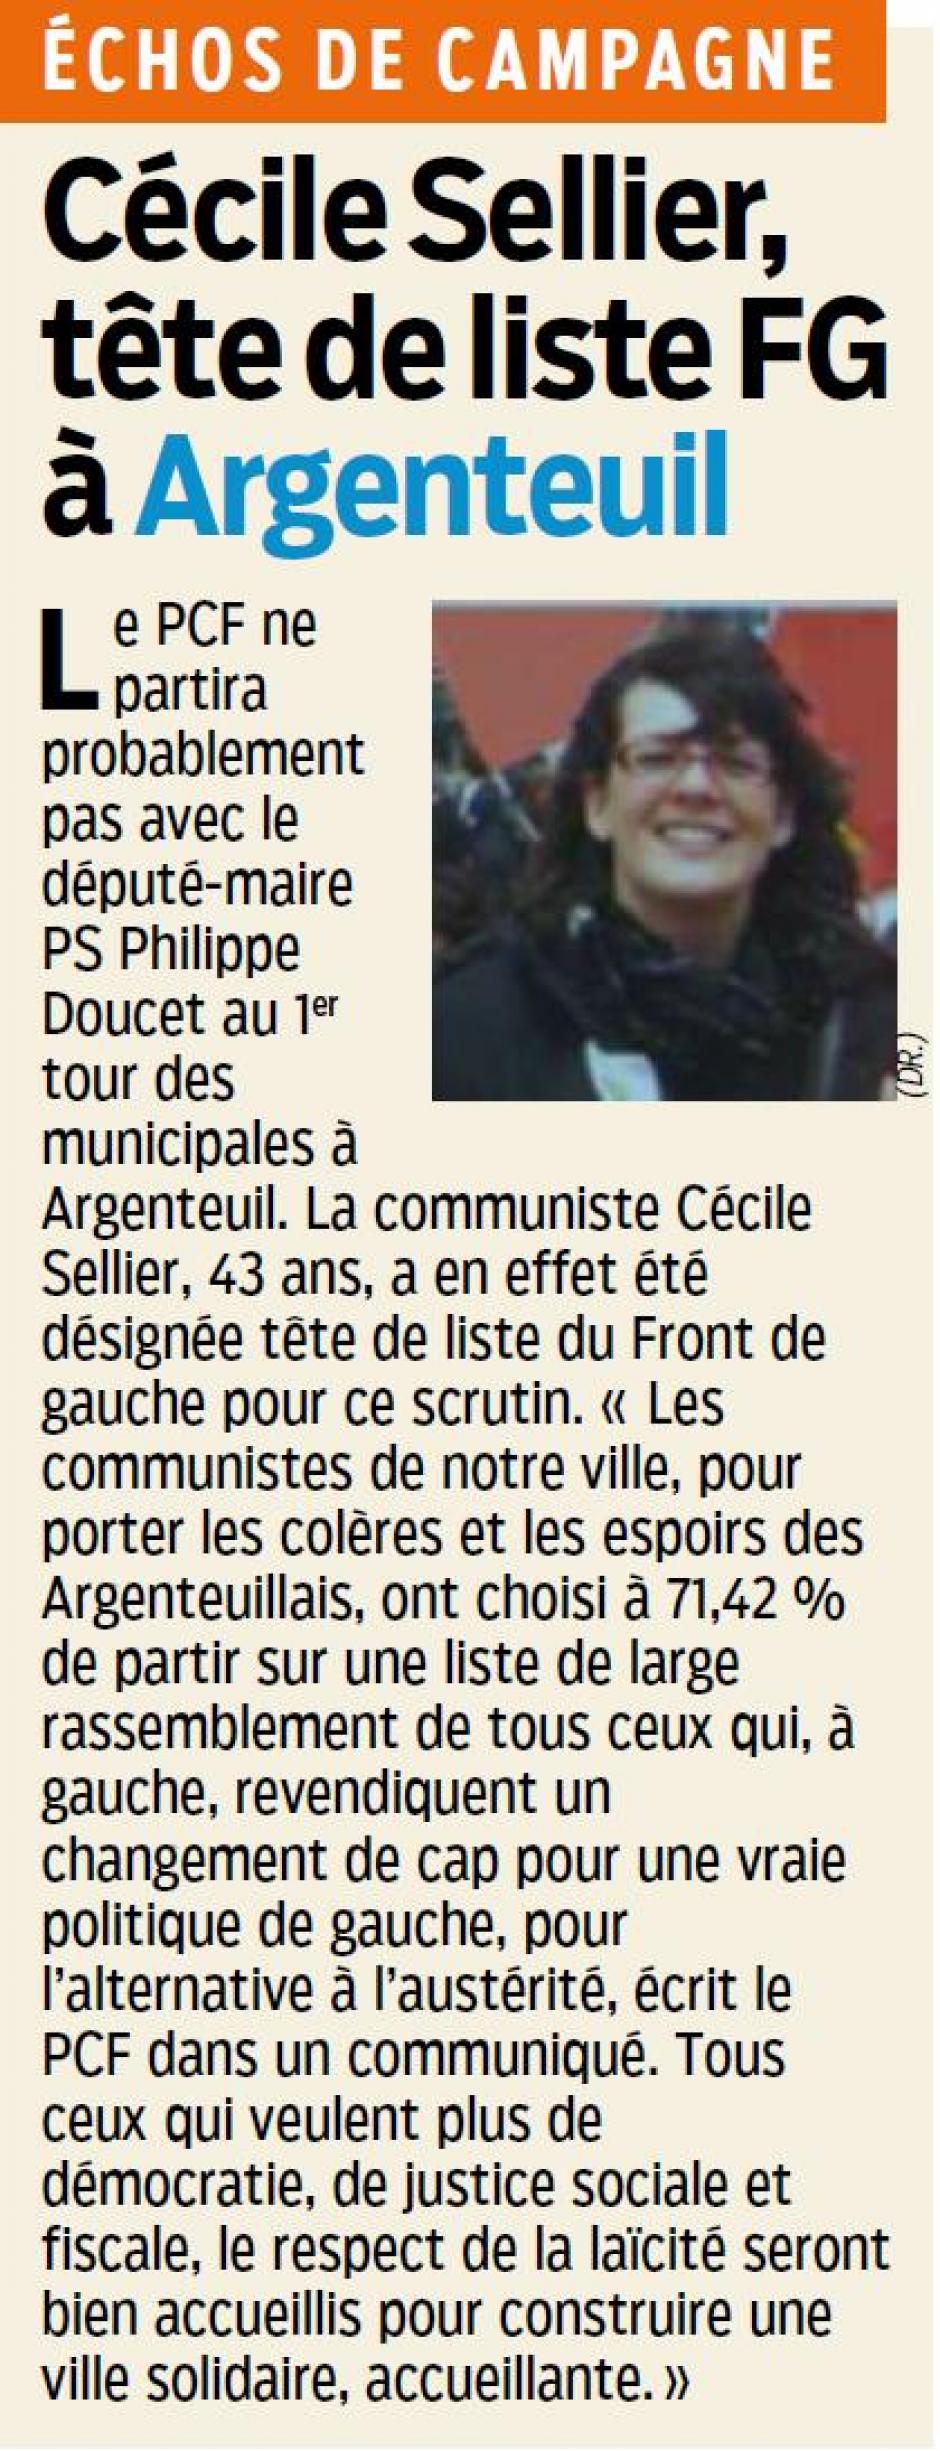 Cécile Sellier tête de liste FG à Argenteuil, le Parisien 95 du 10/12/2013